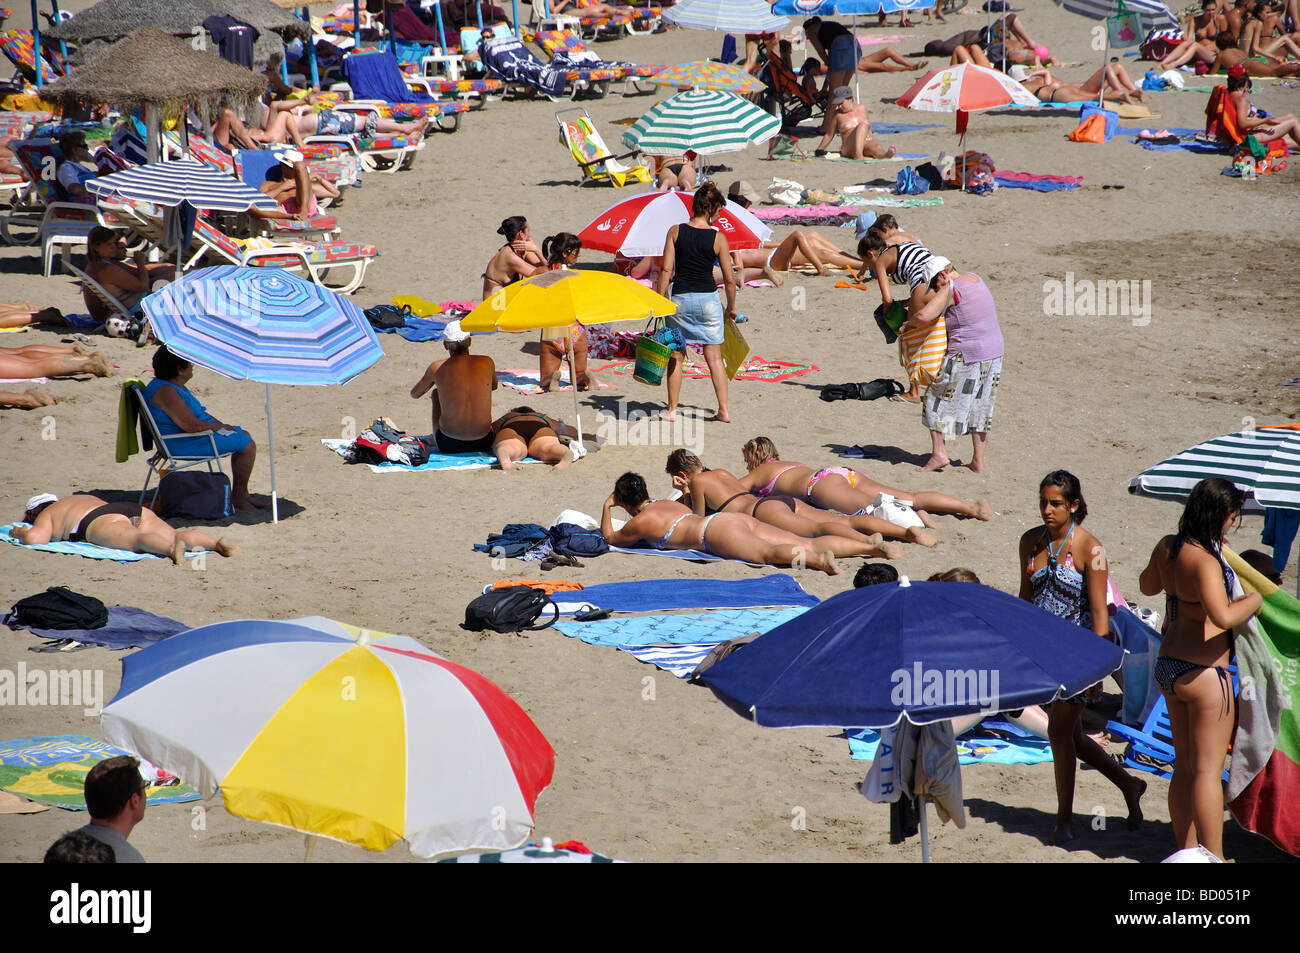 Playa del Faro, Marbella, Costa del Sol, Malaga Province, Andalucia, Spain Stock Photo